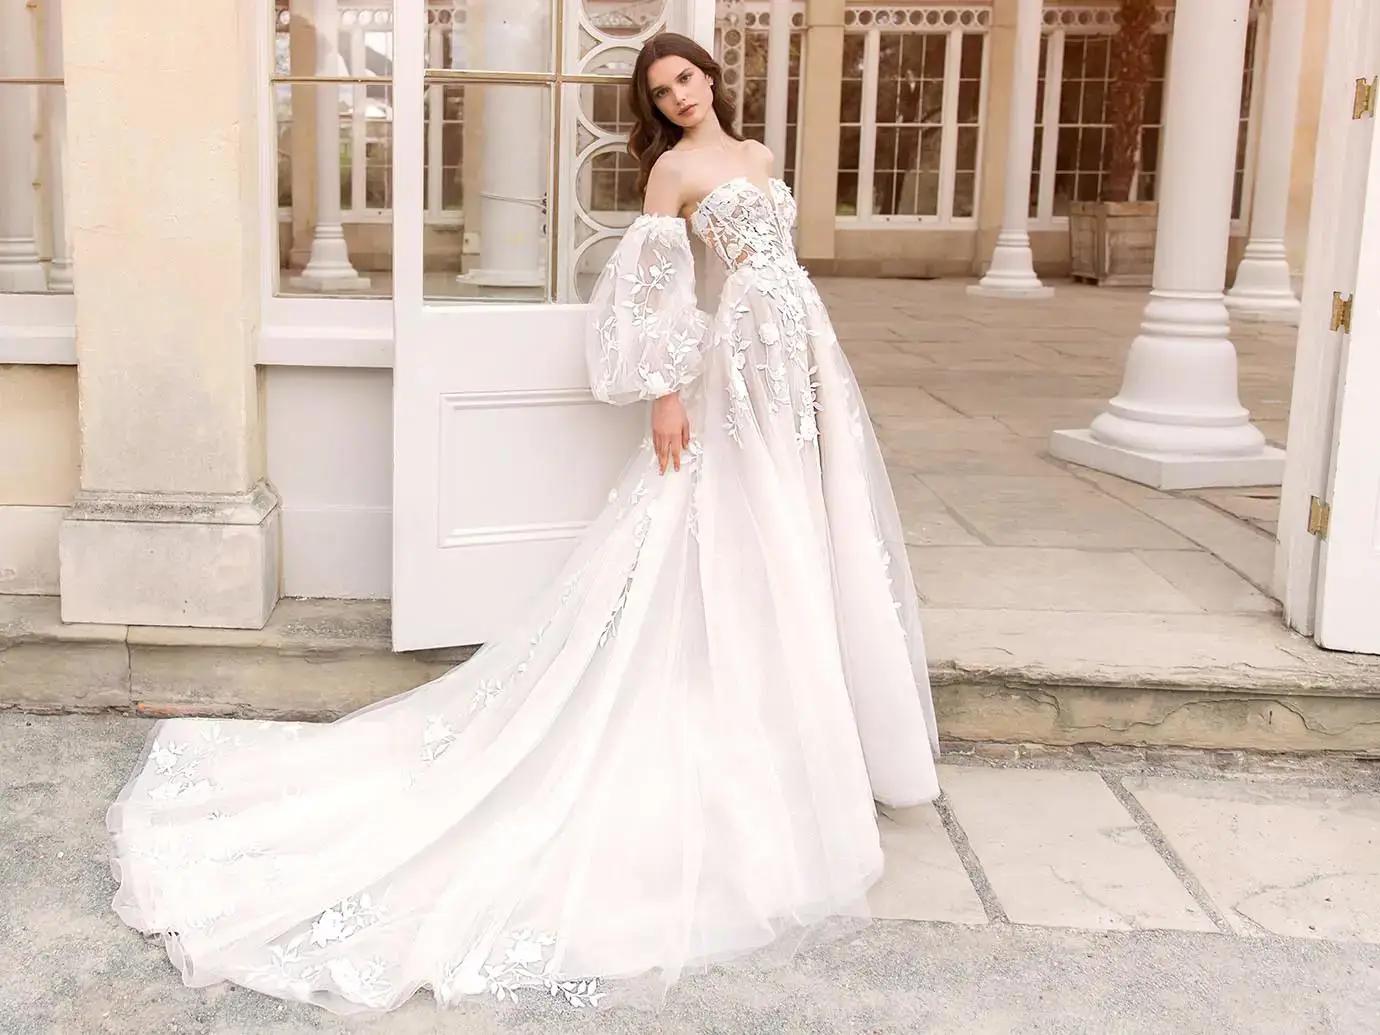 Model wearing Enzoani bridal gown